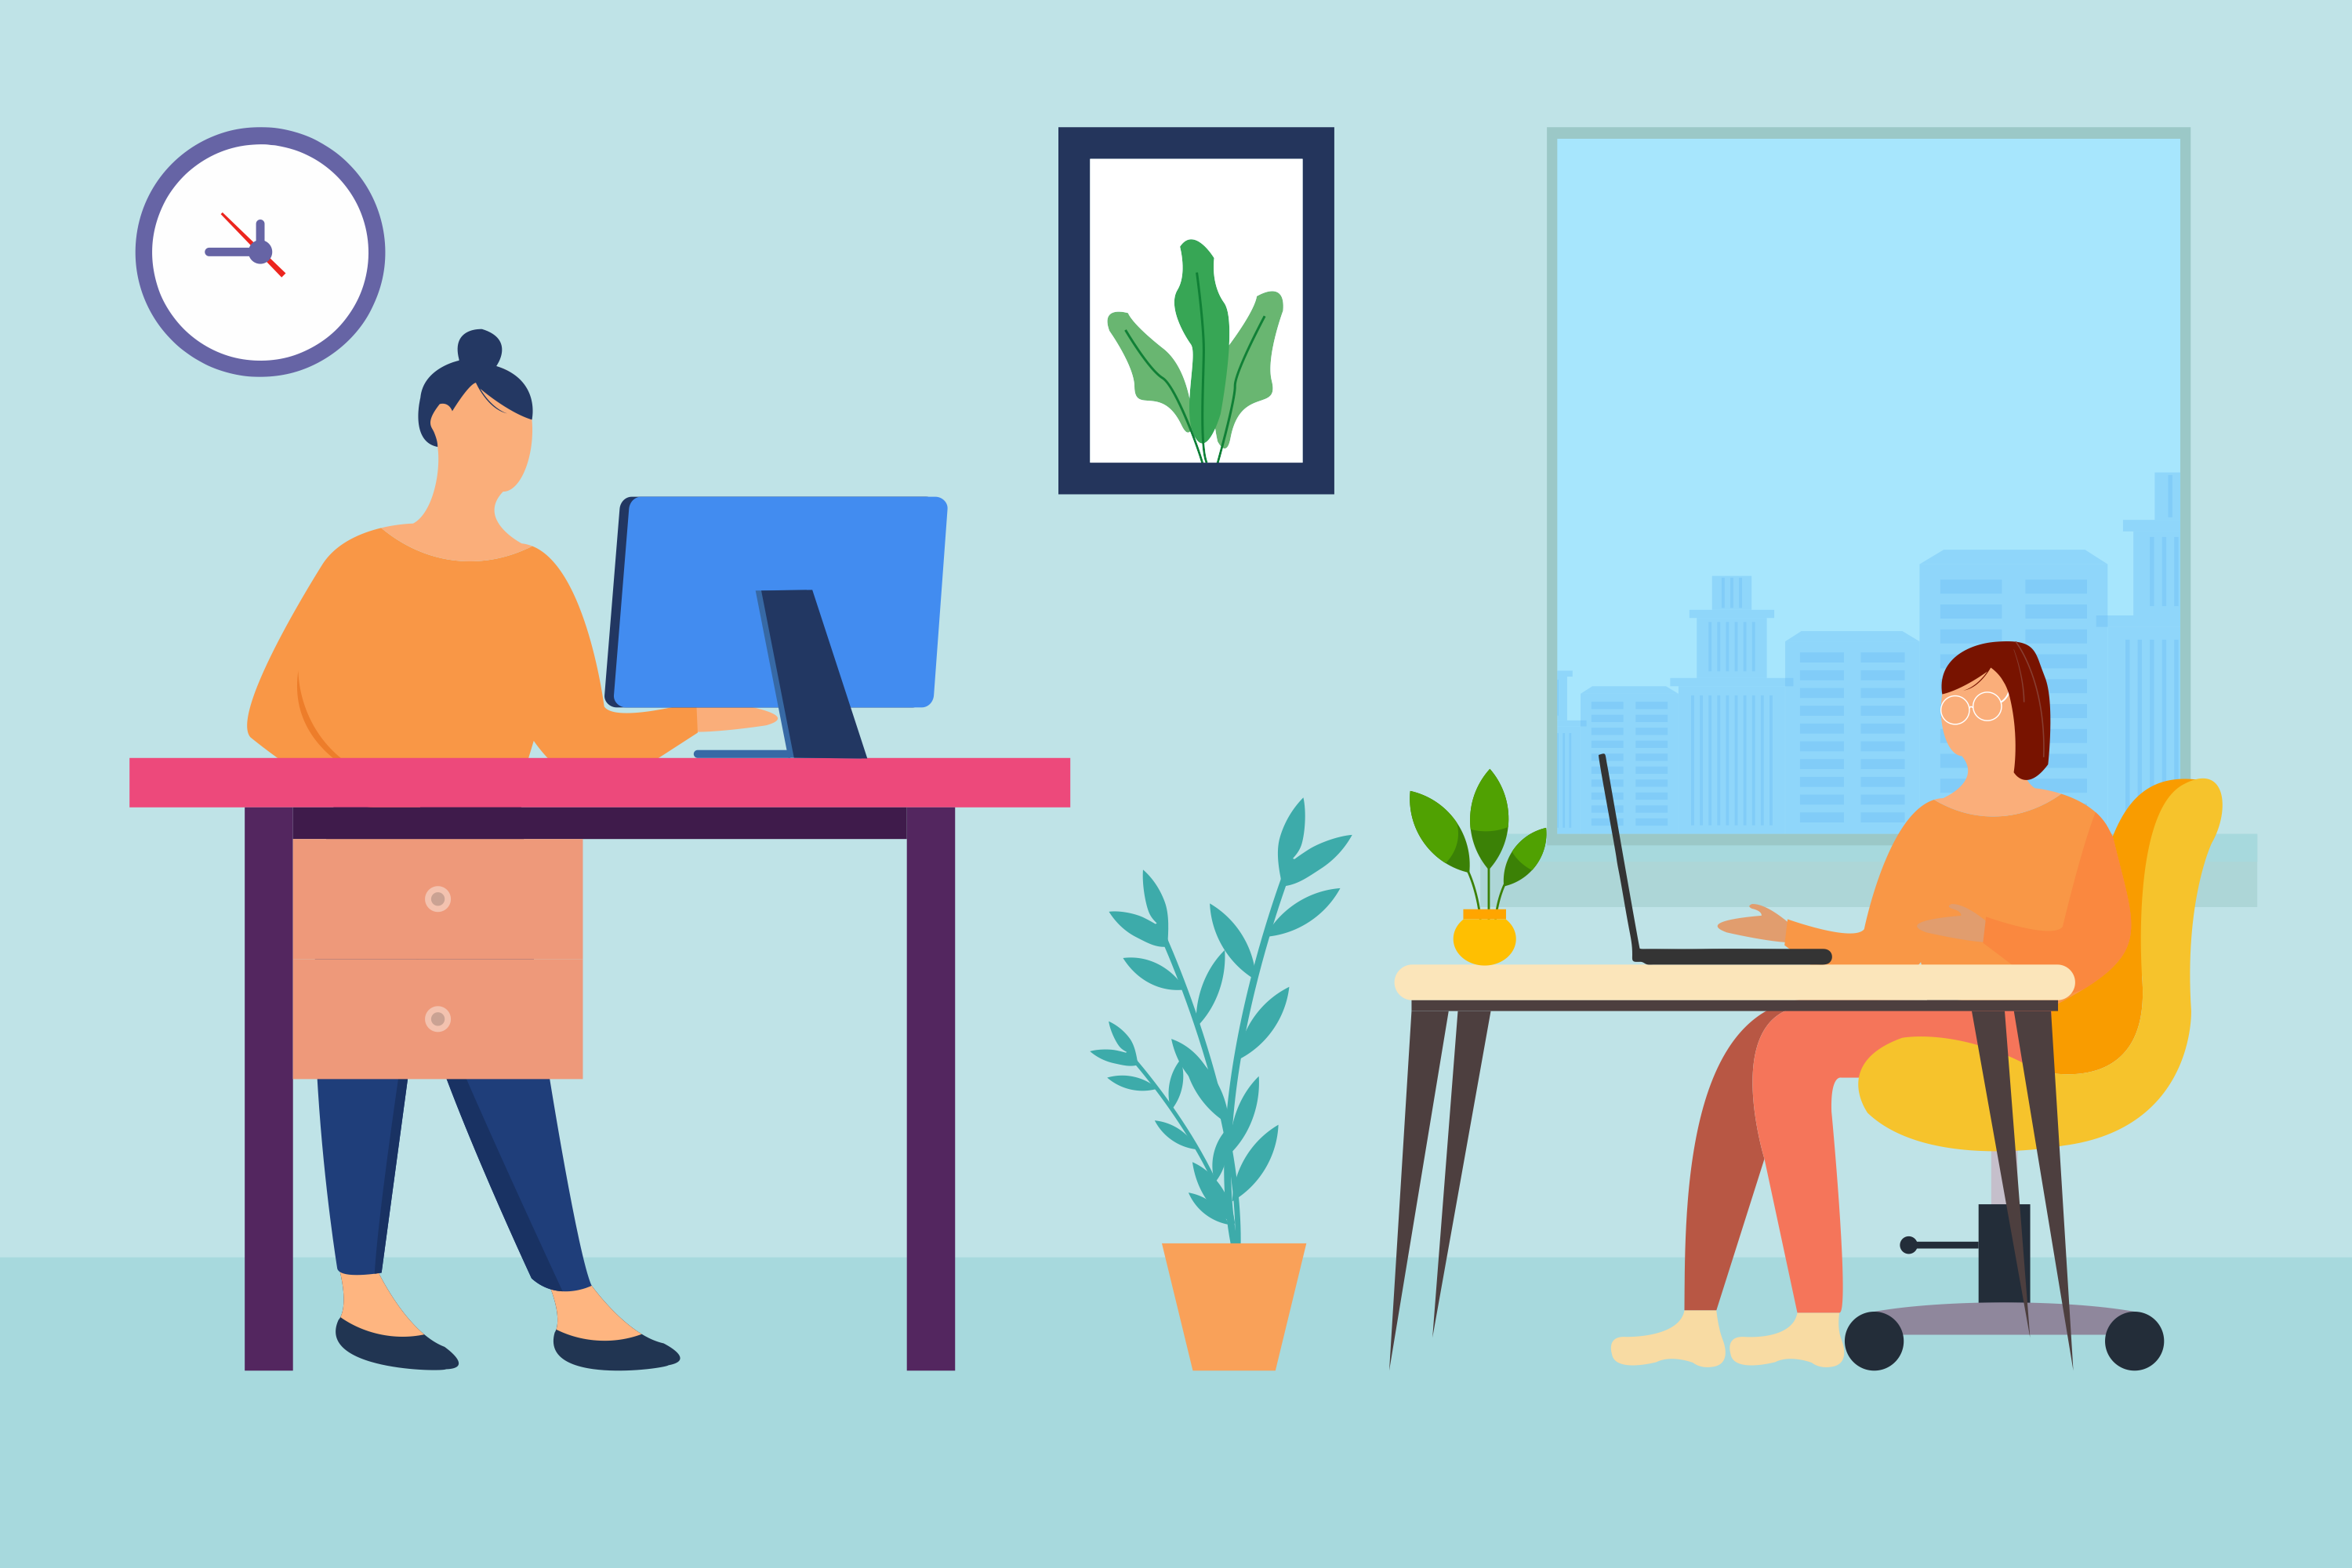 office-desk-job-vector-workspace-laptop-flat-online-workplace-work-modern-design-business-illustration-illustration